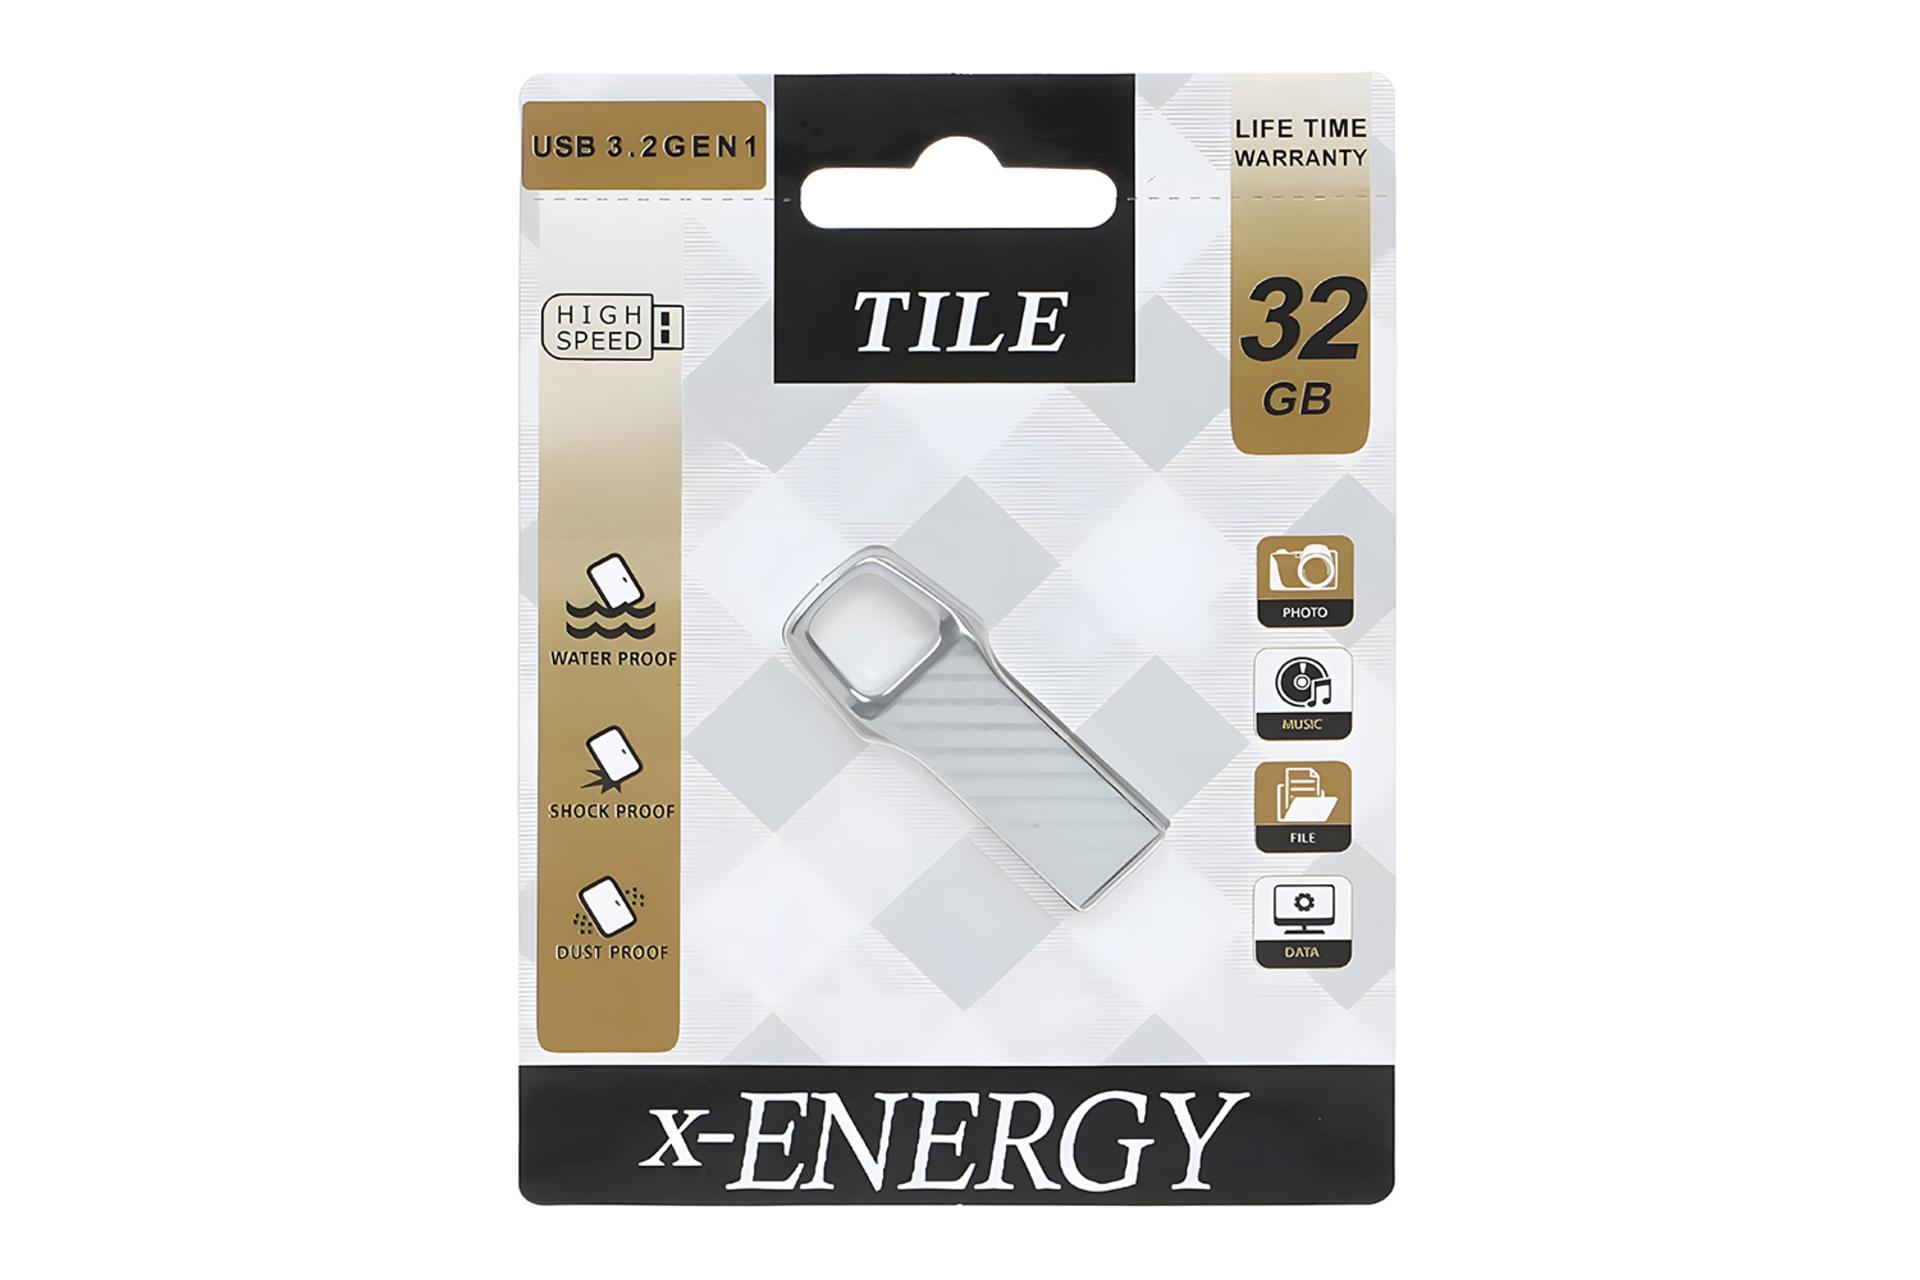 جعبه فلش مموری ایکس انرژی x-Energy Tile 32GB USB 3.2